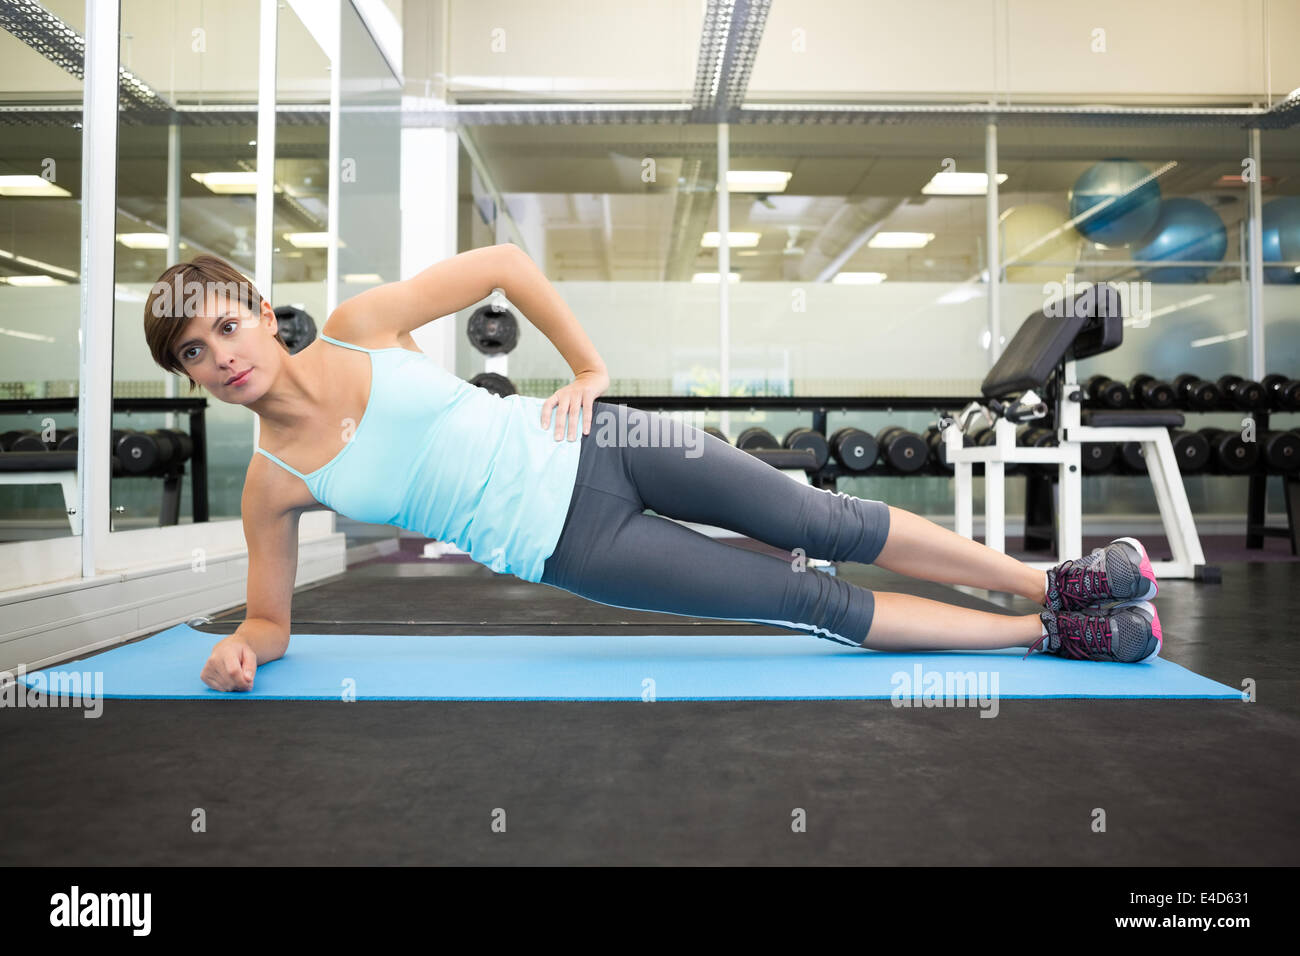 Fit brunette doing pilates on exercise mat Stock Photo